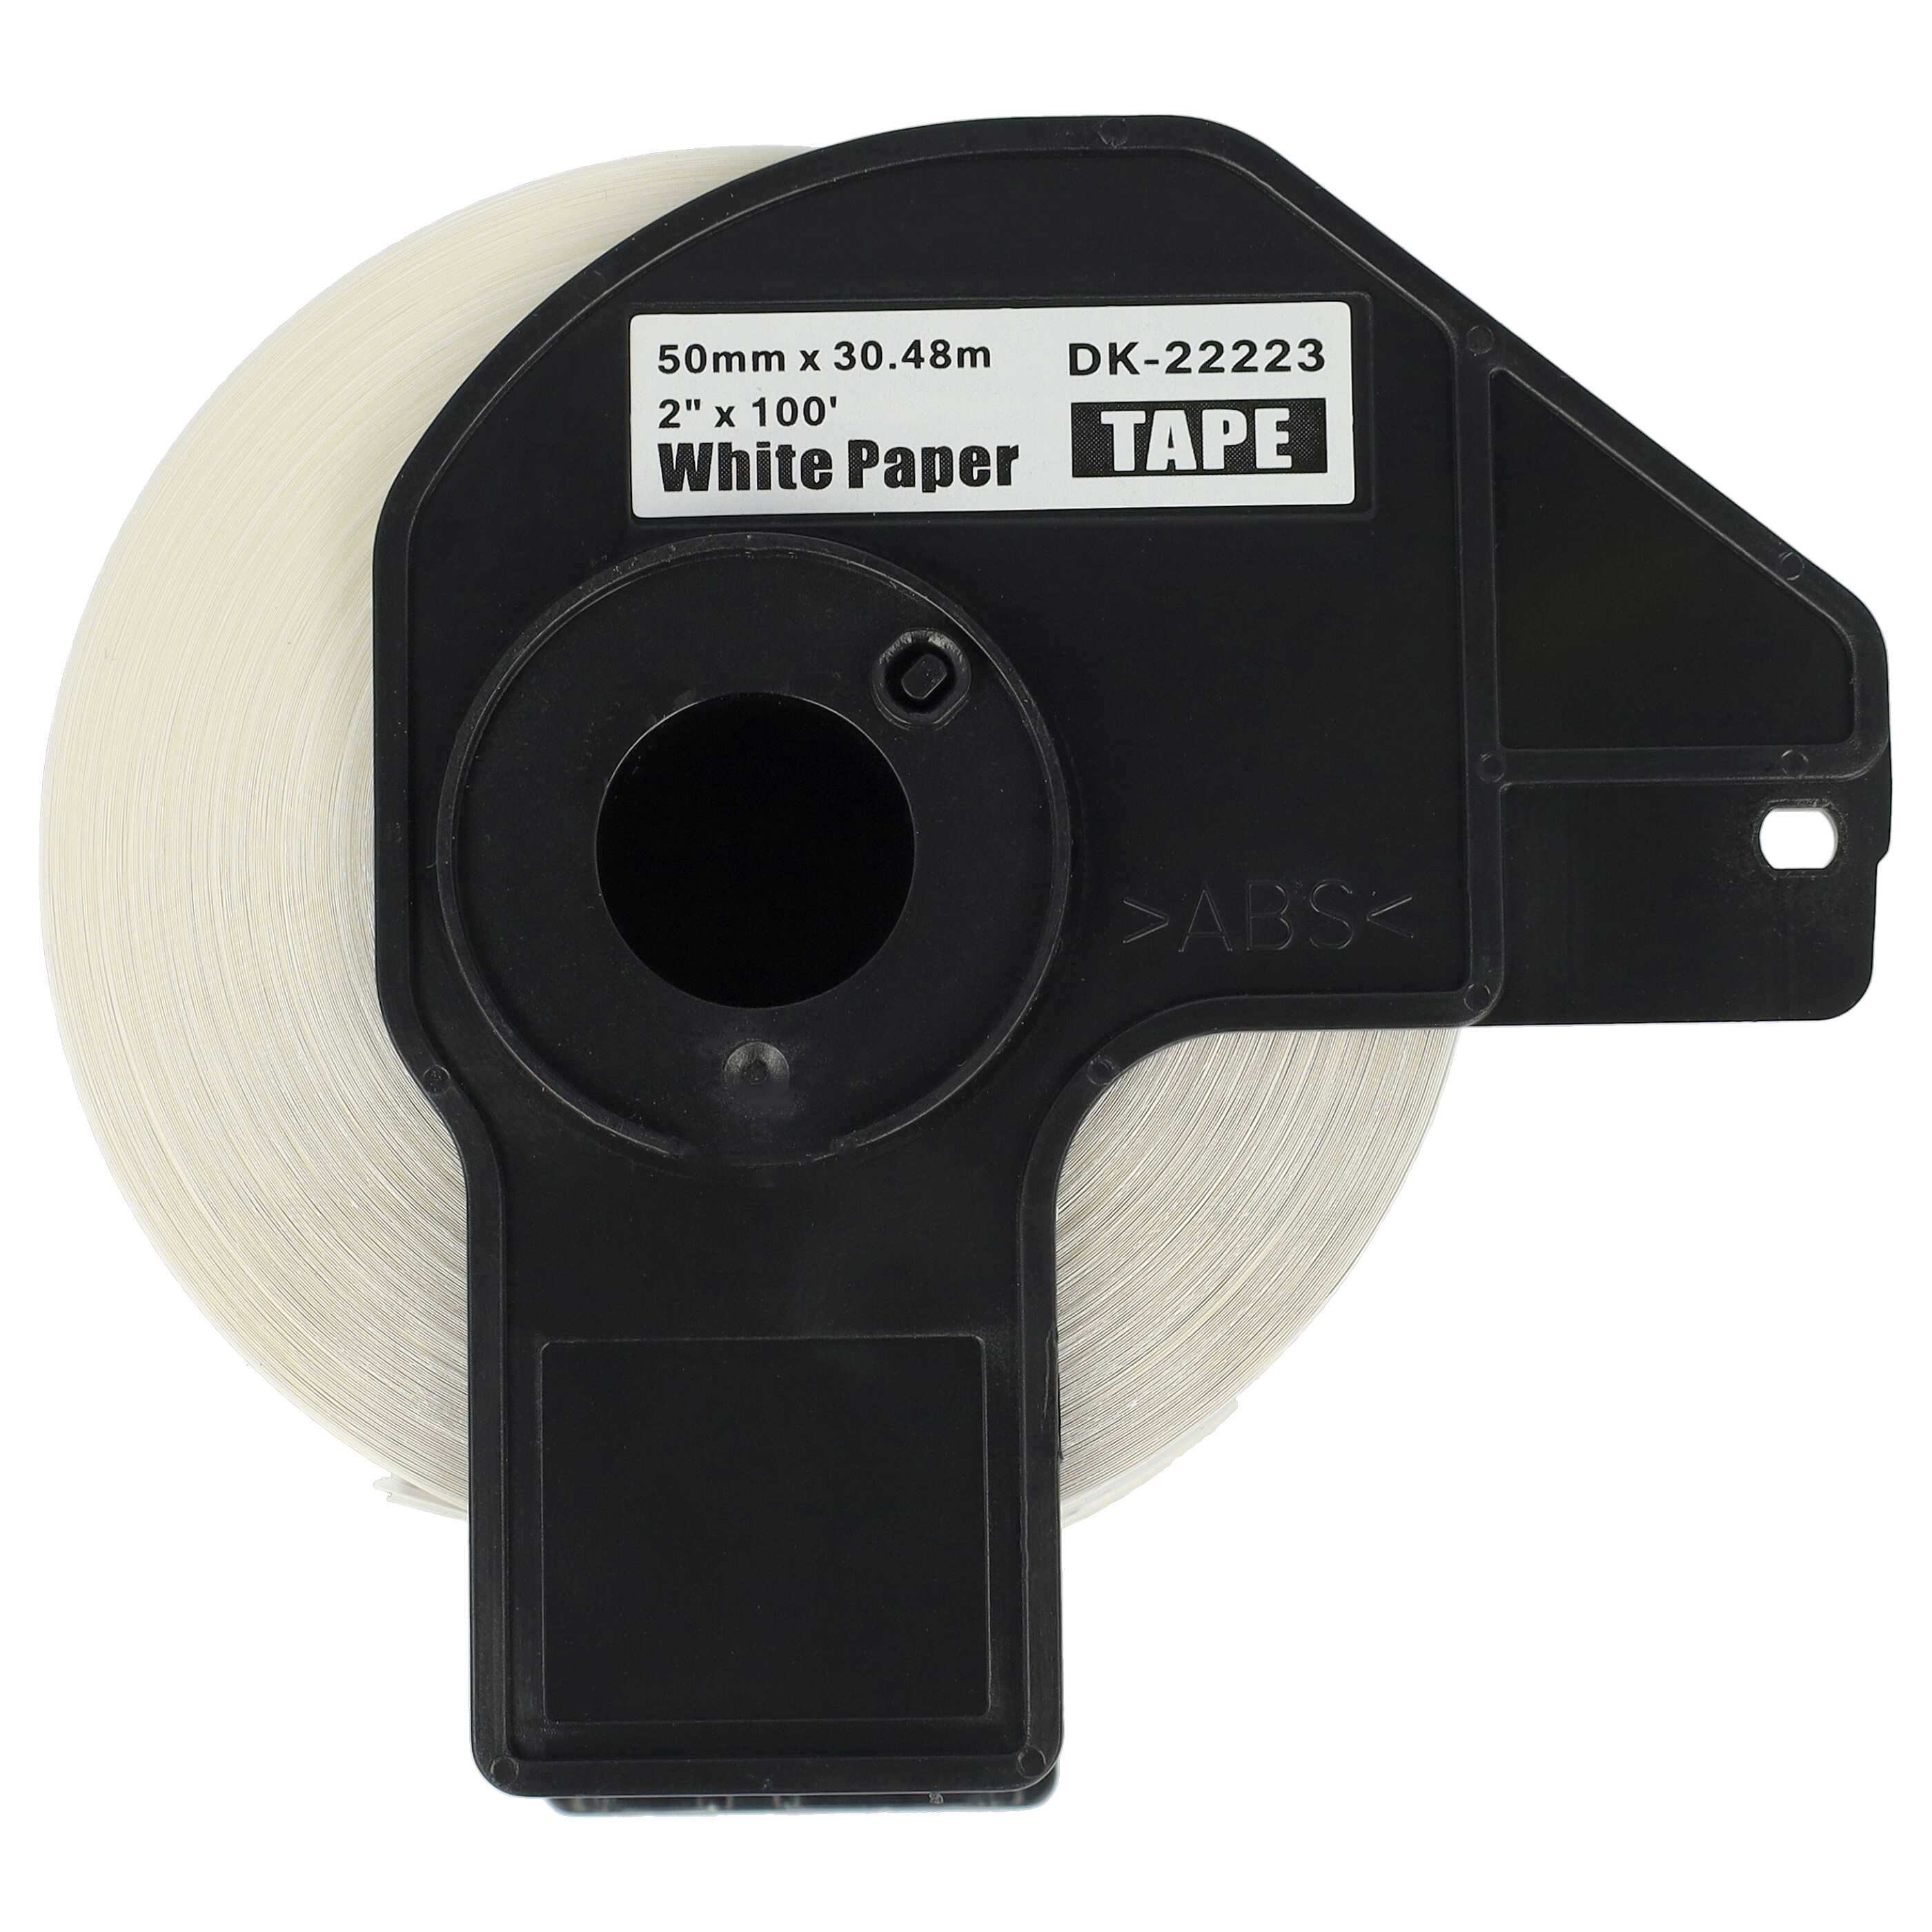 10x Etiketten als Ersatz für Brother DK-22223 für Etikettendrucker - Premium 50mm x 30,48m + Halter